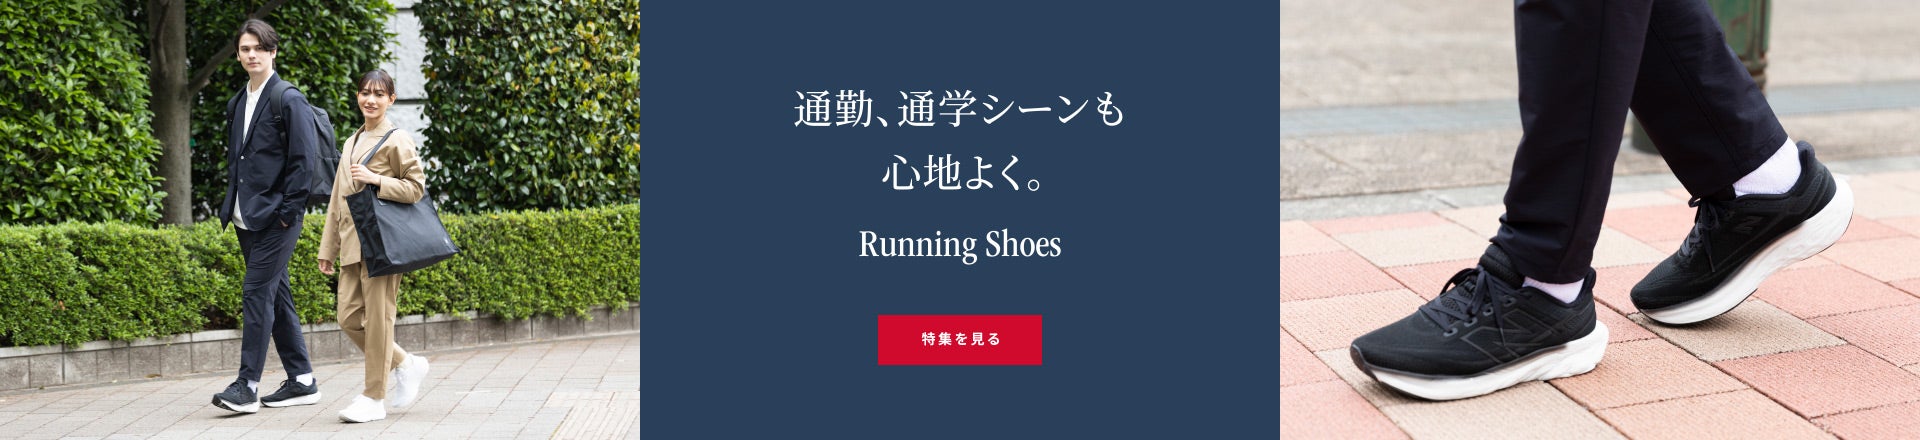 통근, 통학 장면도 기분 좋게. Running Shoes